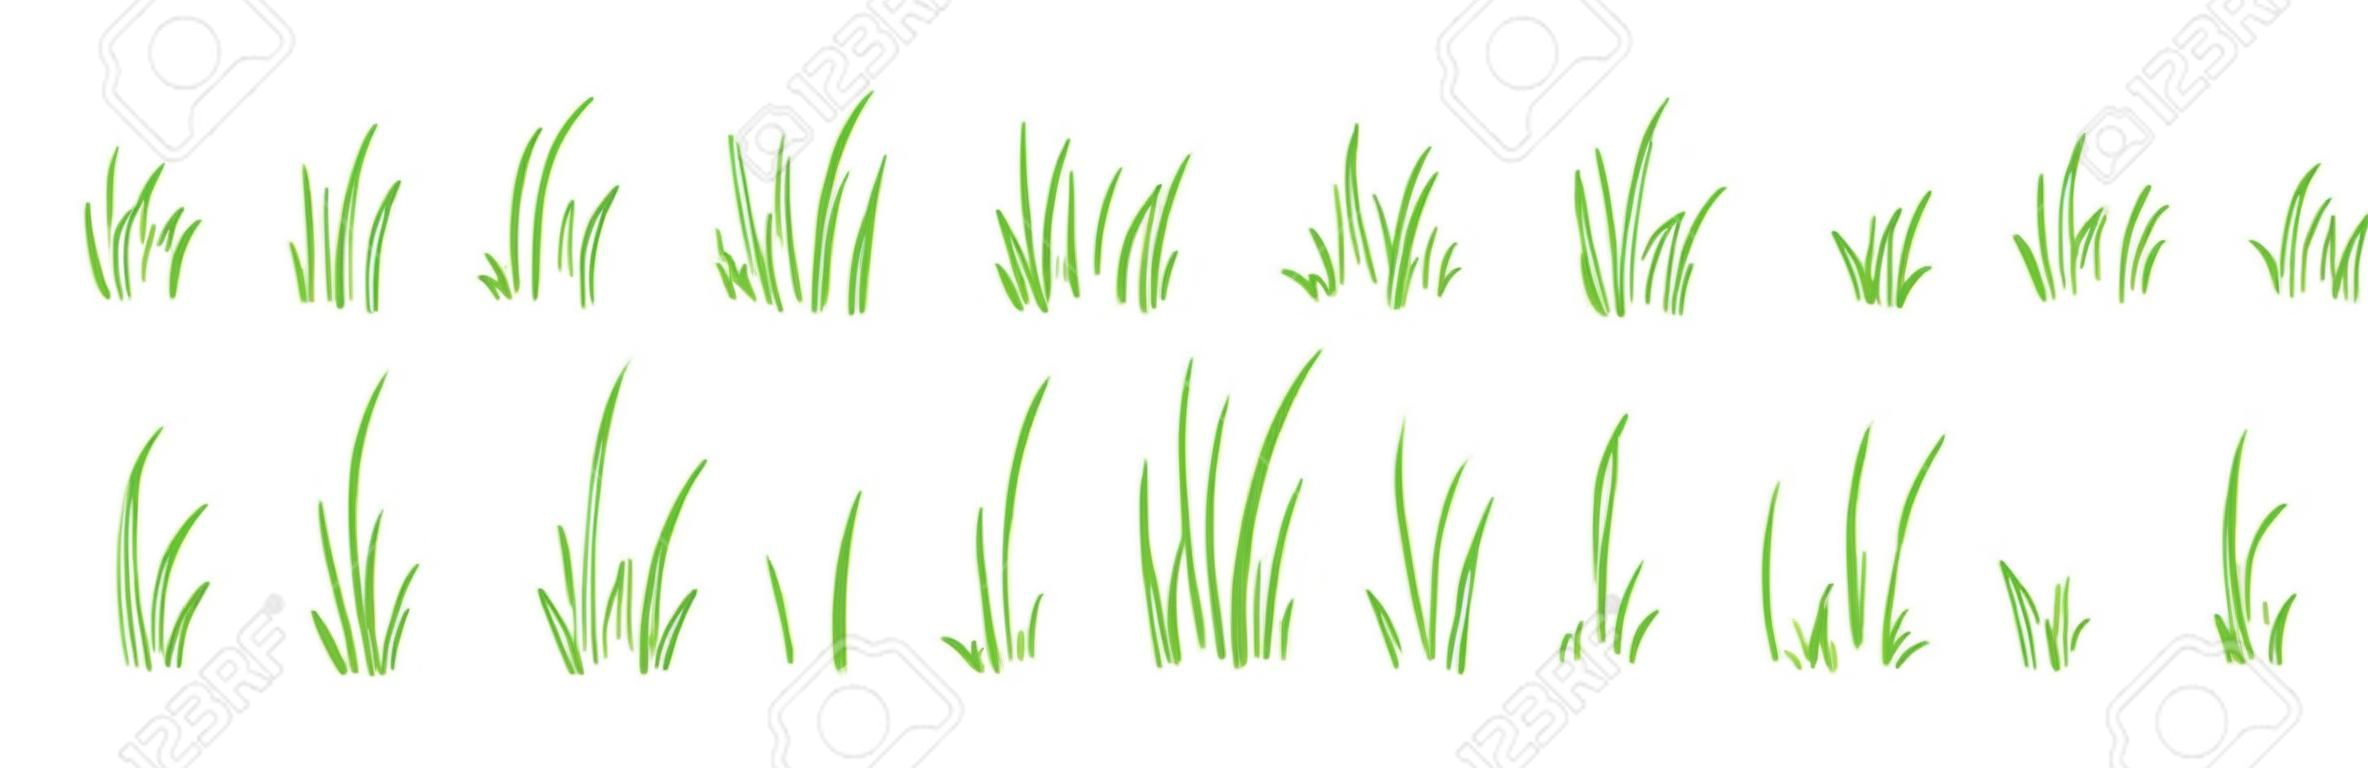 Ensemble de vecteurs de ligne de brousse d'herbe dessinés à la main, éléments de croquis prairie et paysage, pelouse de griffonnage, conception de contour de bordure verte isolée sur fond blanc. Illustration de la nature